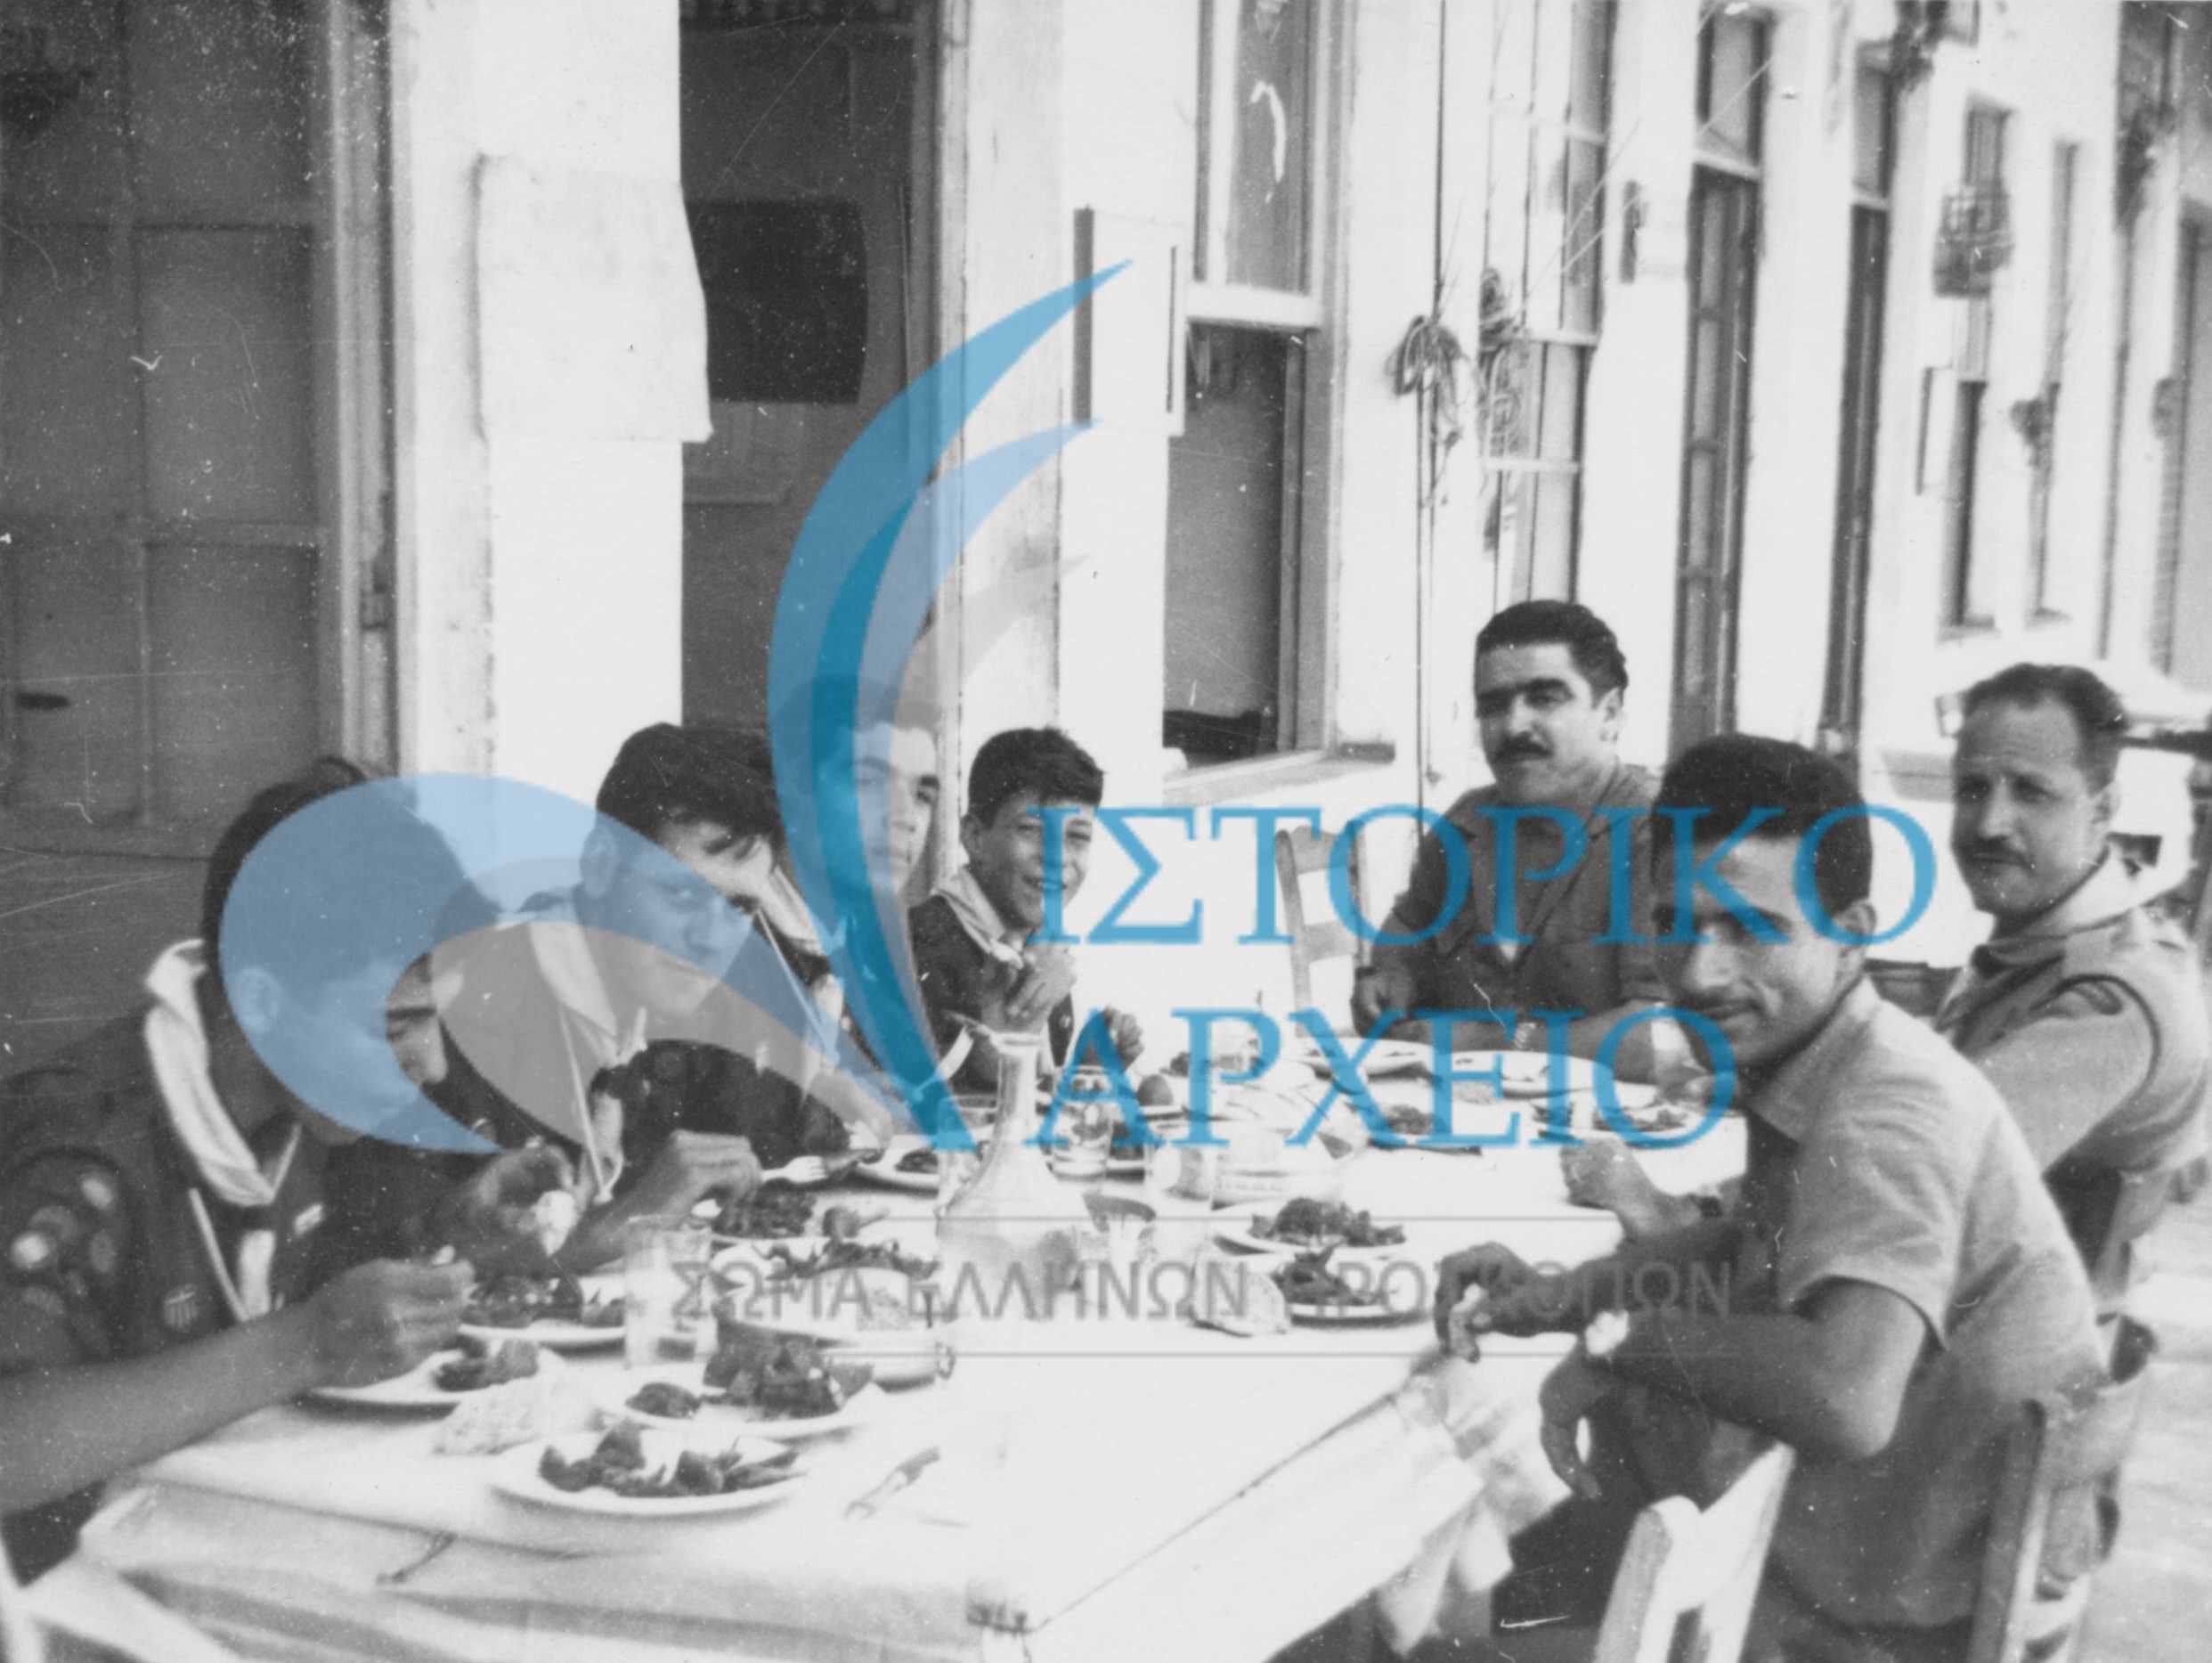 Η αντιπροσωπεία των Προσκόπων του Λιβάνου σε γεύμα στα Μεσόγεια καθ' οδόν για τον χώρο του 11ου Τζάμπορη. Διακρίνονται: Κ. Παπαϊωάννου, Α. Λαζαρίδης, Ι. Μπουμπούκης, Κ. Μπουμπούκης και ο έφορος Μαρίνος